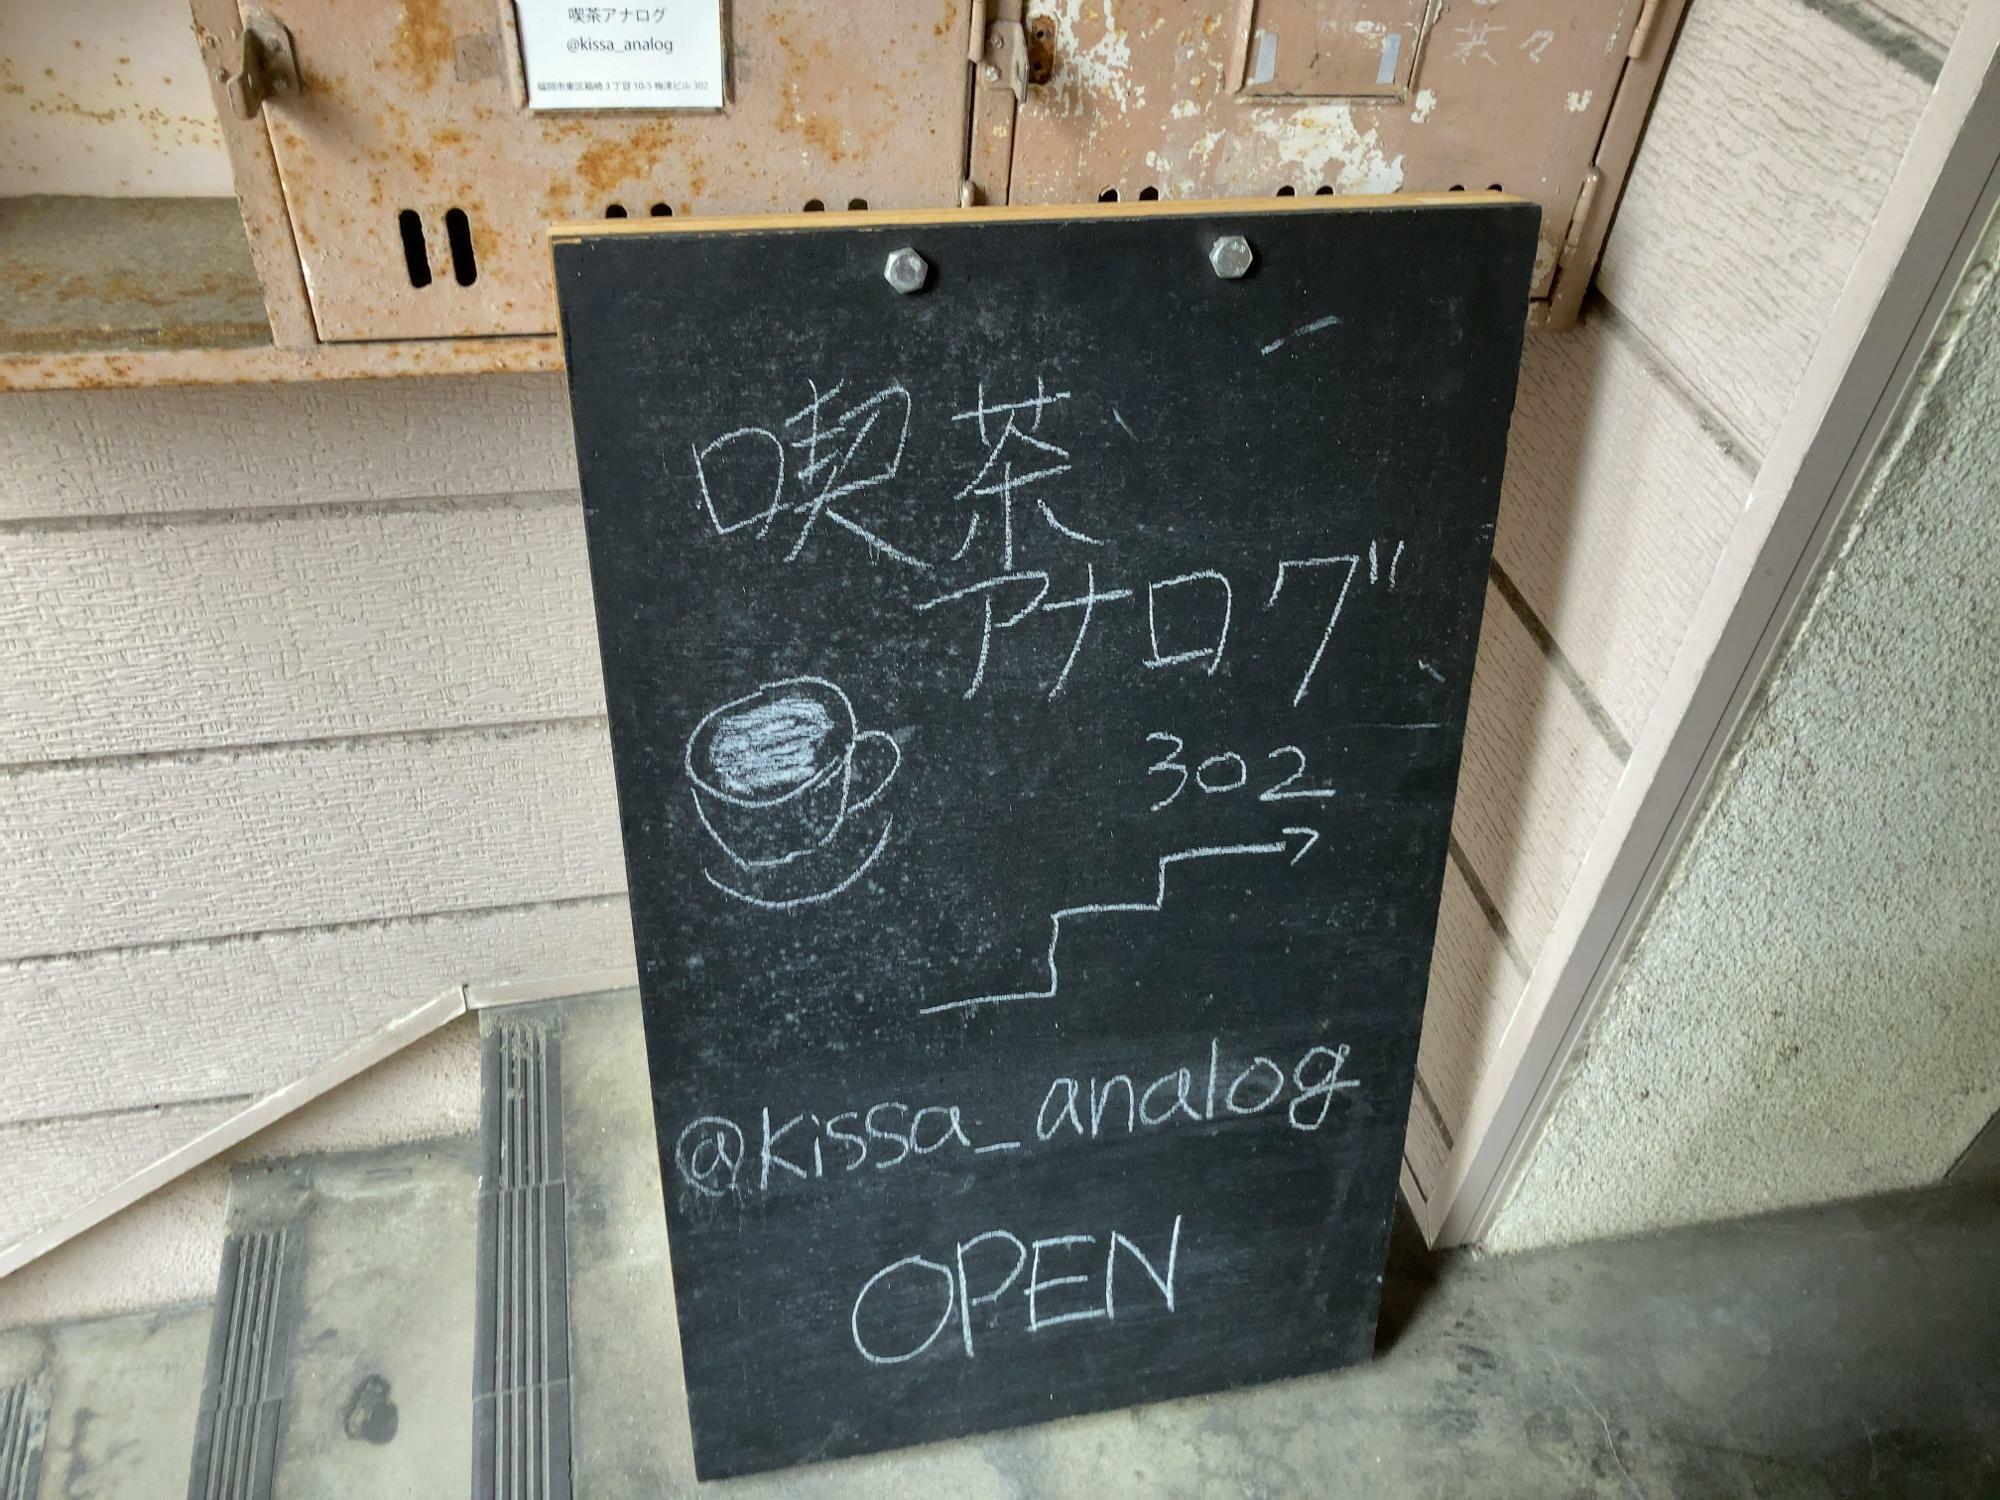 「ノビシロ珈琲」は週3日、「喫茶アナログ」は週4日同じ場所で違う日に営業しています